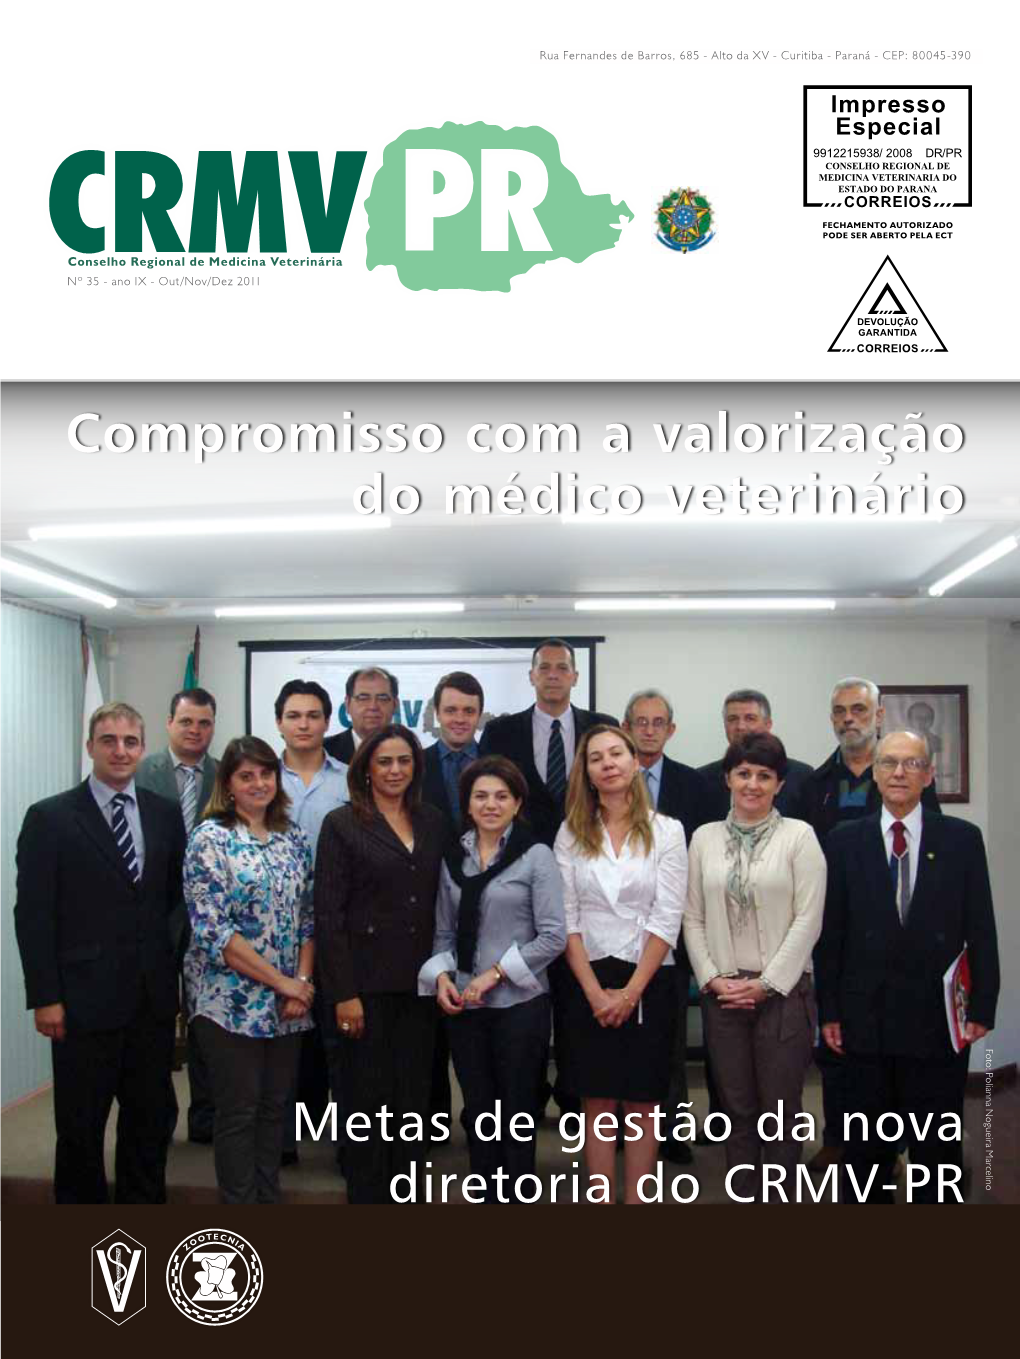 Metas De Gestão Da Nova Diretoria Do CRMV-PR Compromisso Com a Valorização Do Médico Veterinário